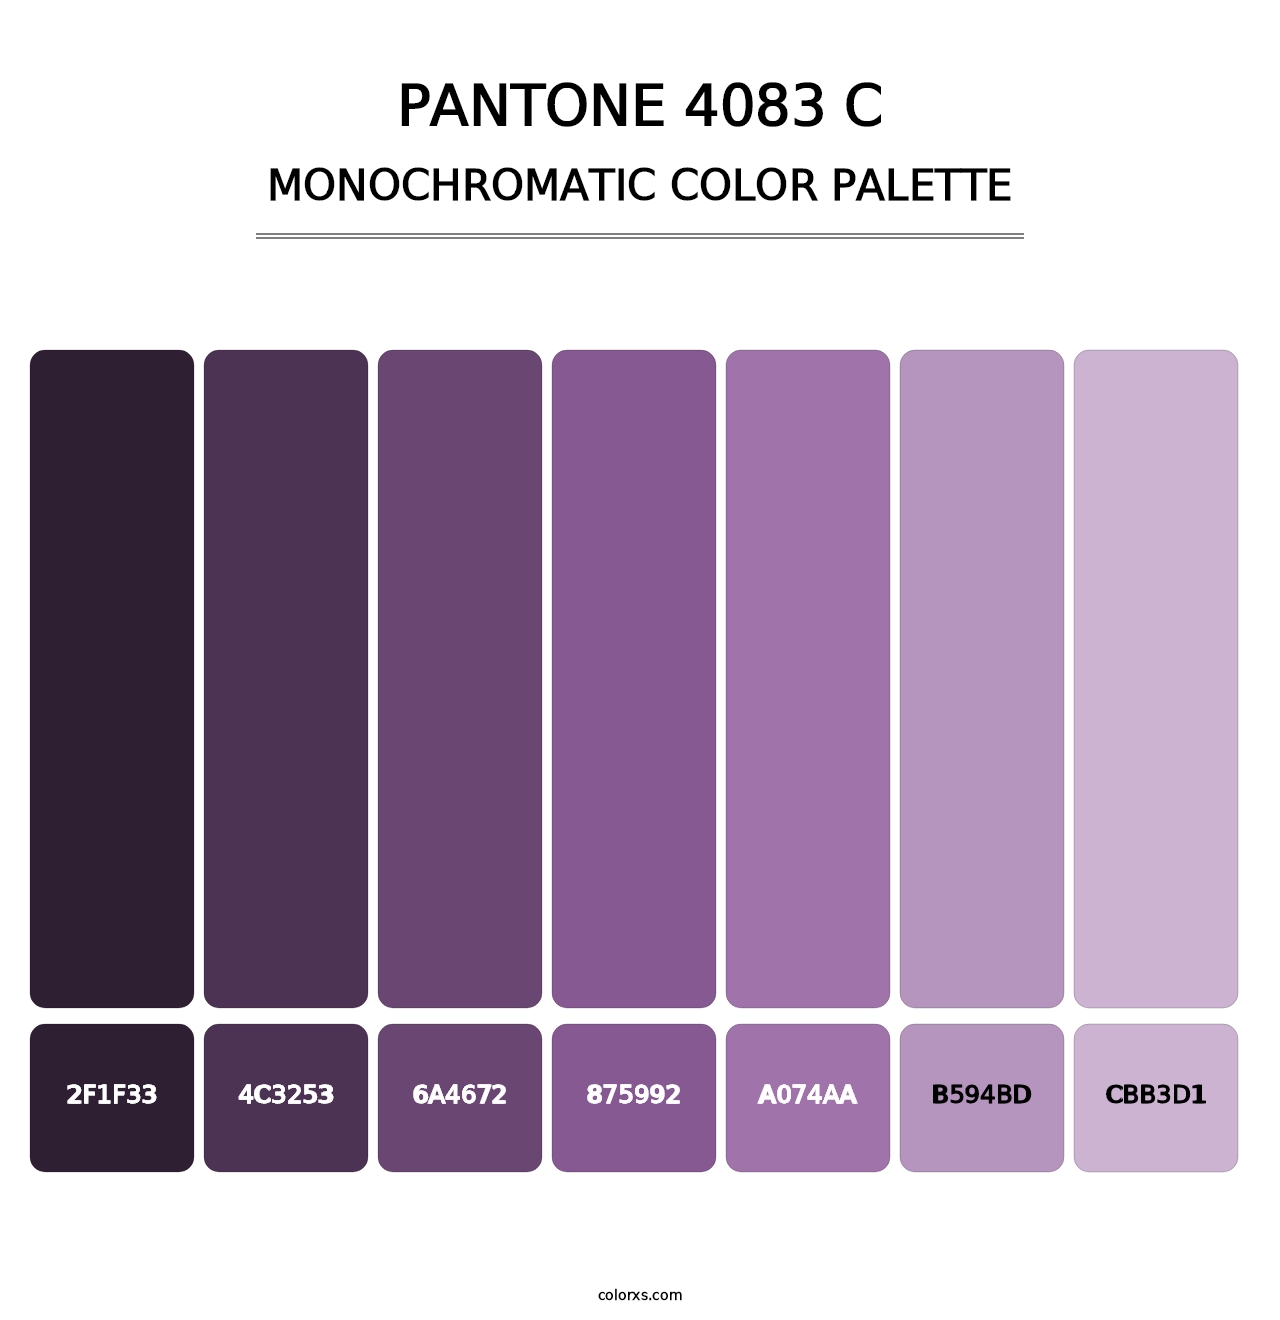 PANTONE 4083 C - Monochromatic Color Palette